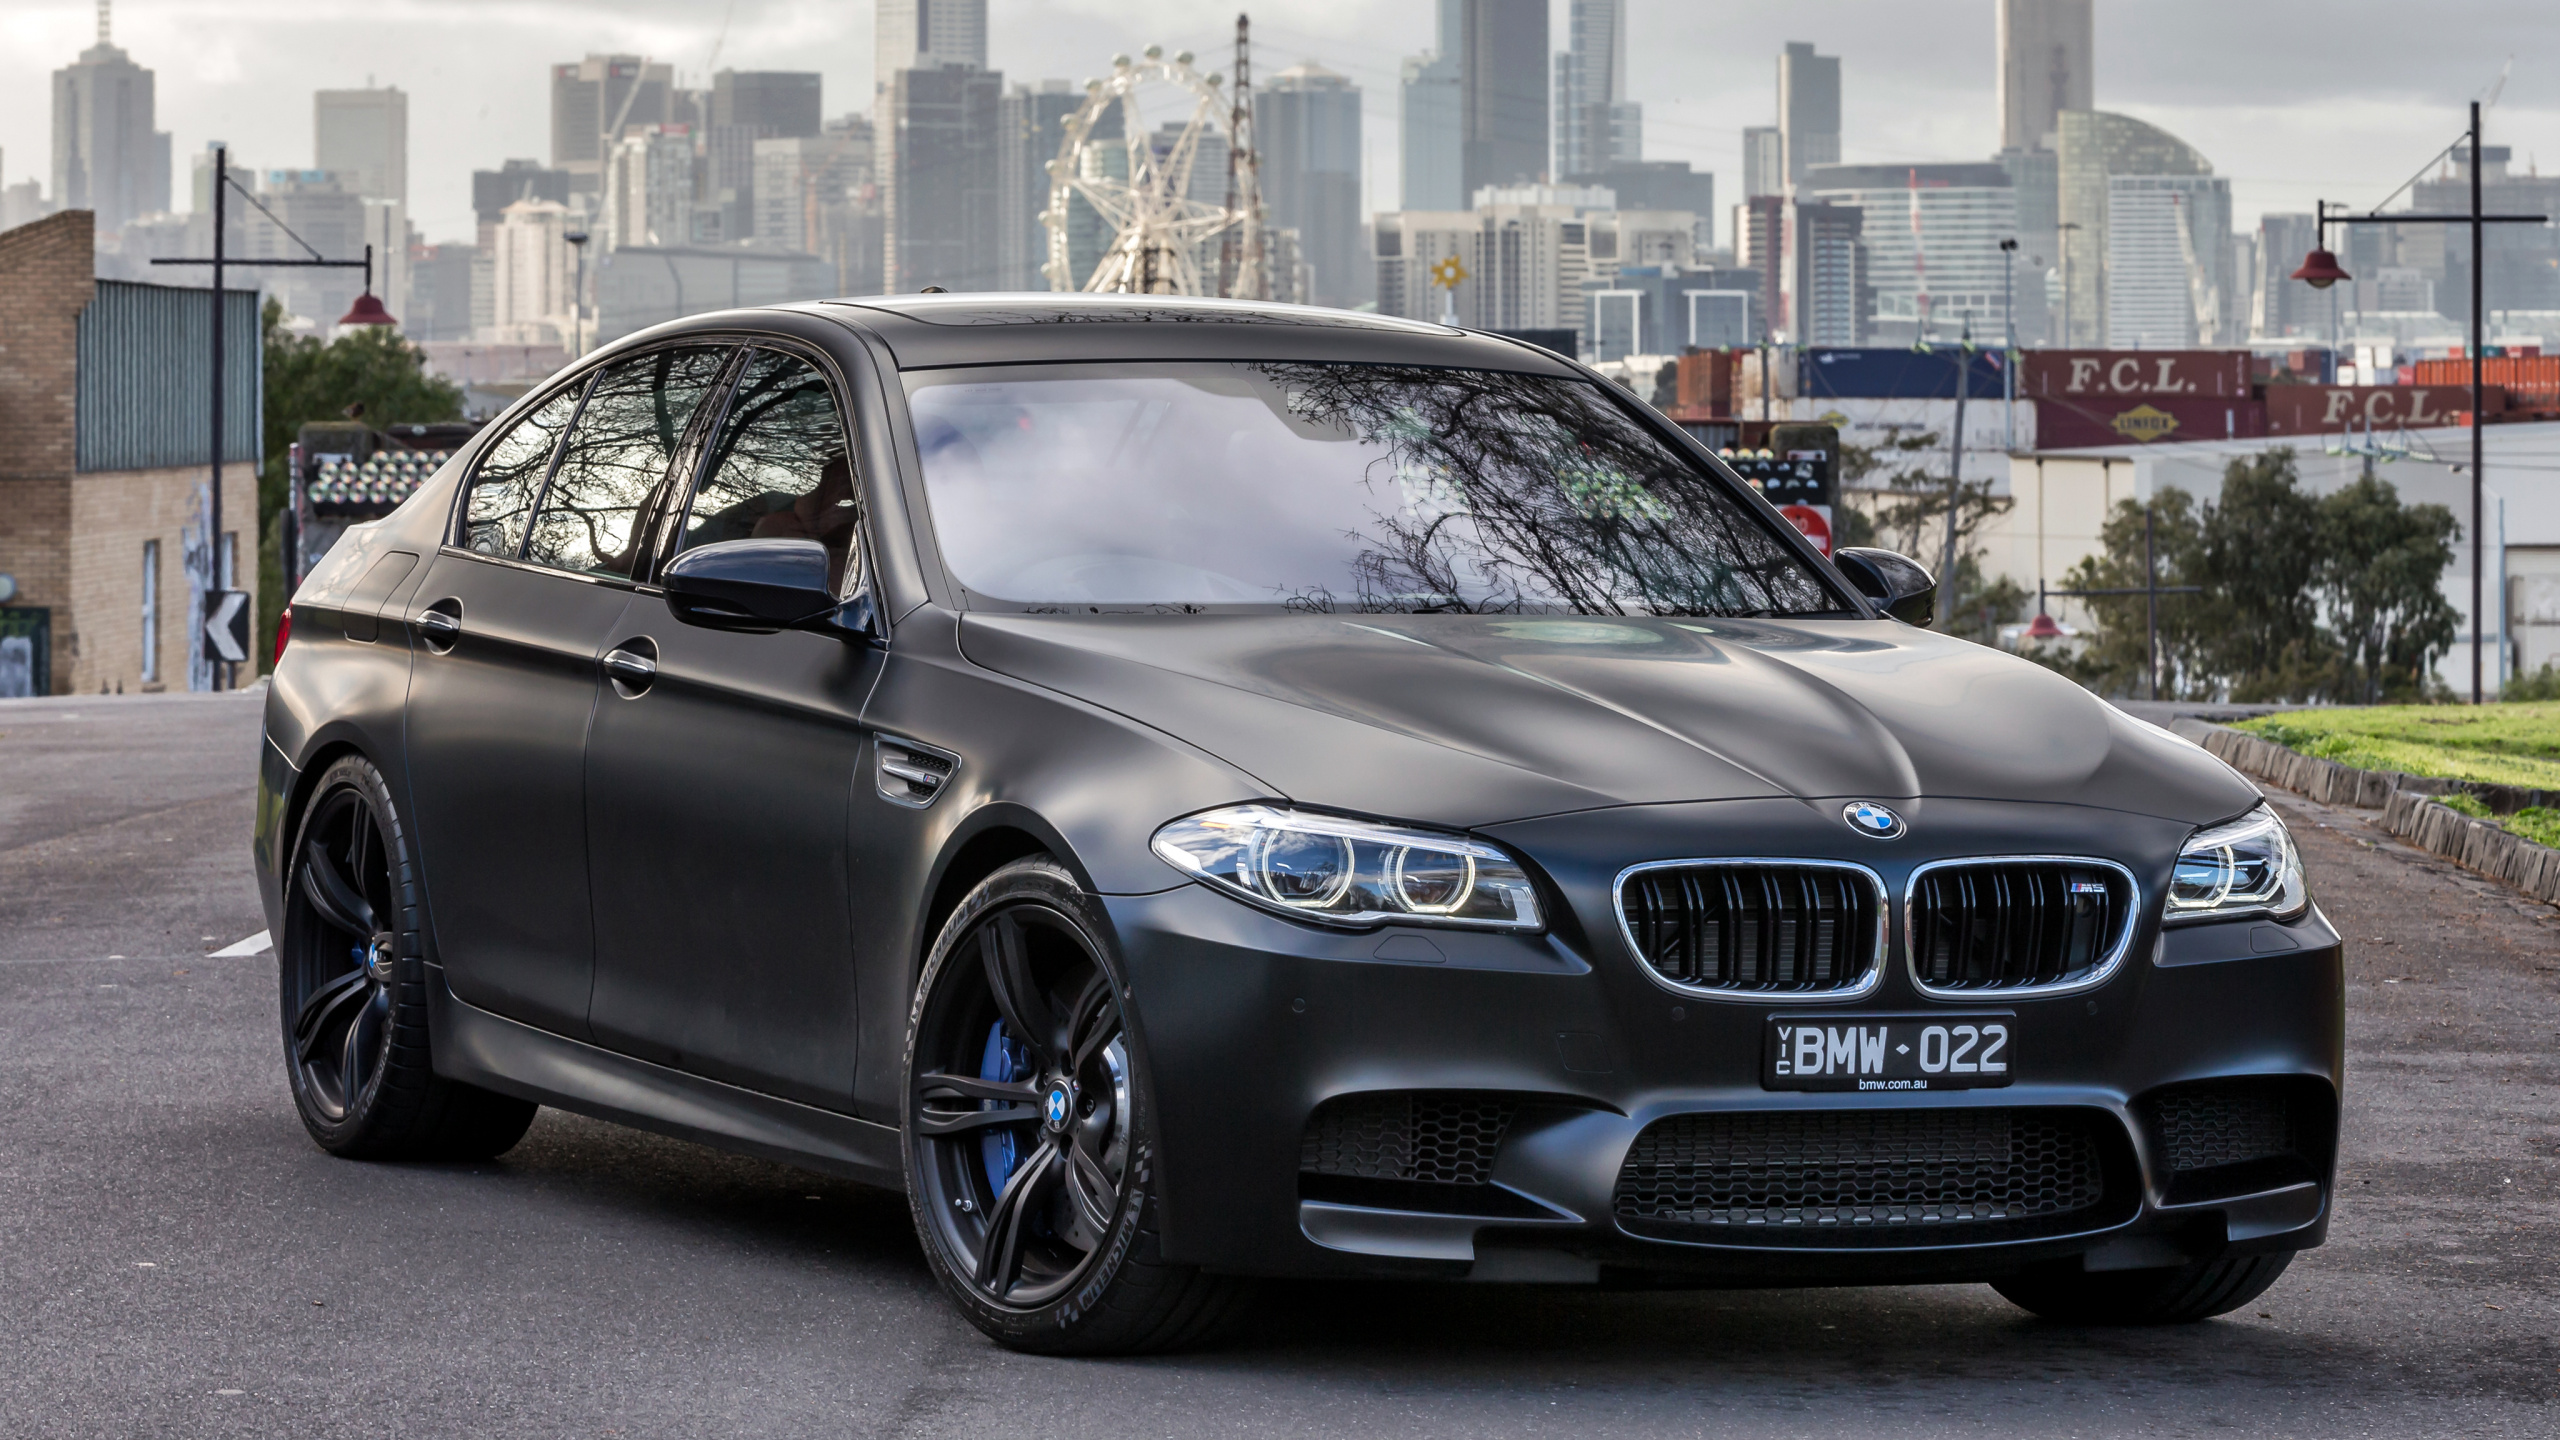 2018年BMW M5, 宝马, 宝马5系, 执行汽车, 铝合金轮毂 壁纸 2560x1440 允许